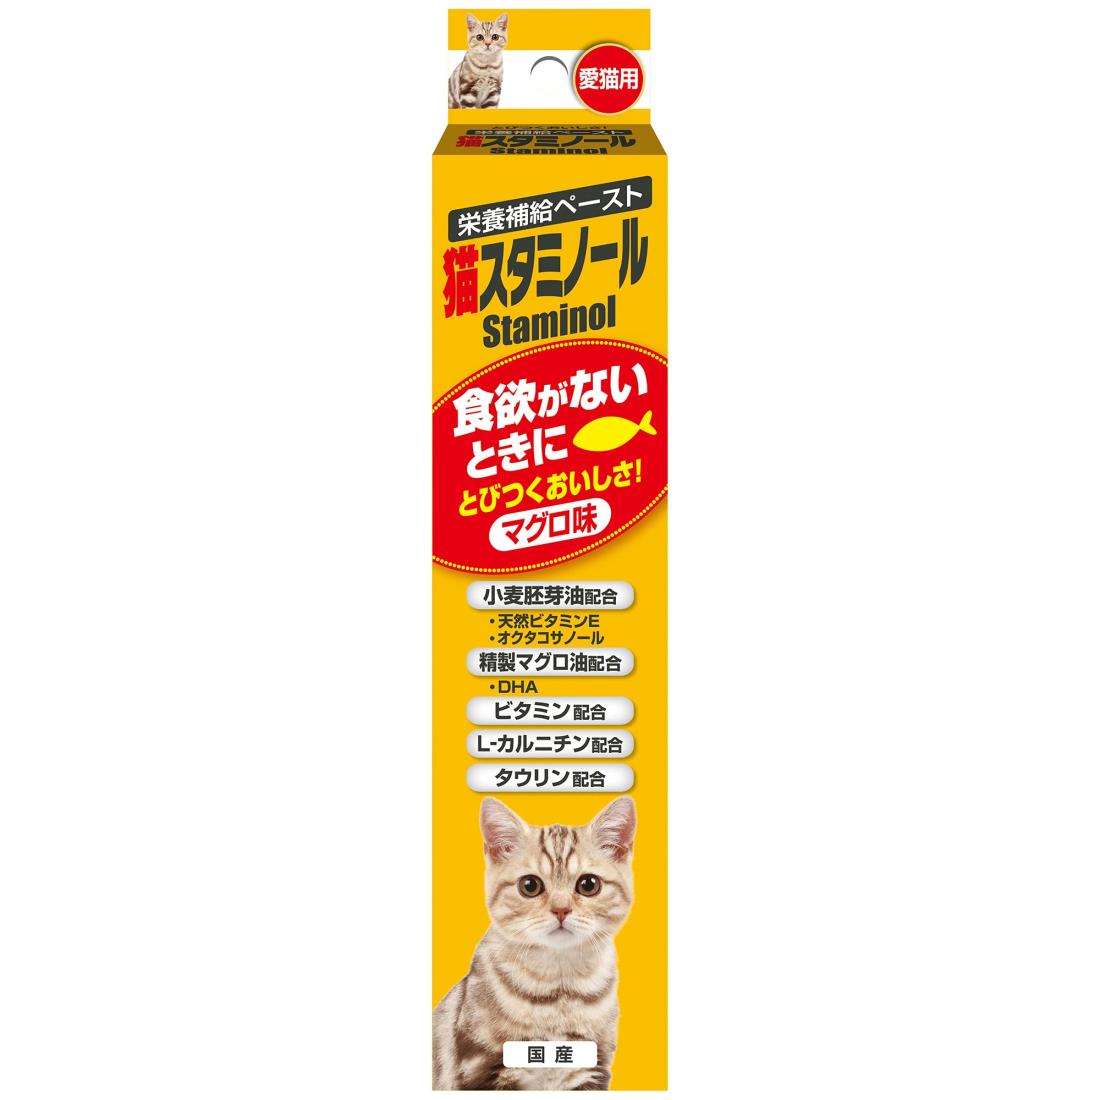 アース・ペット猫スタミノール 食欲 50g